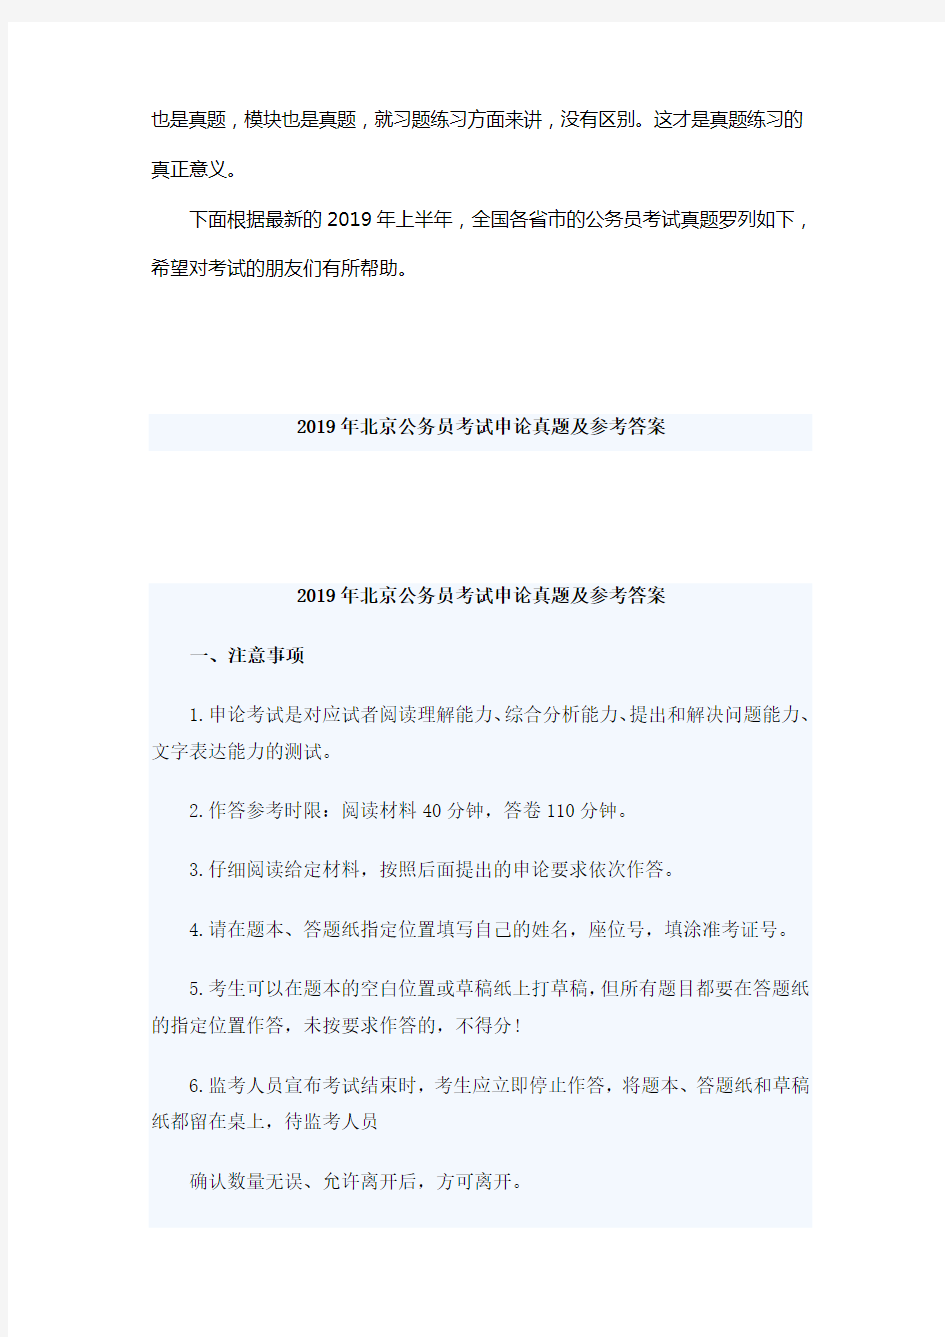 【真题】最新2019年北京公务员考试申论真题及参考答案